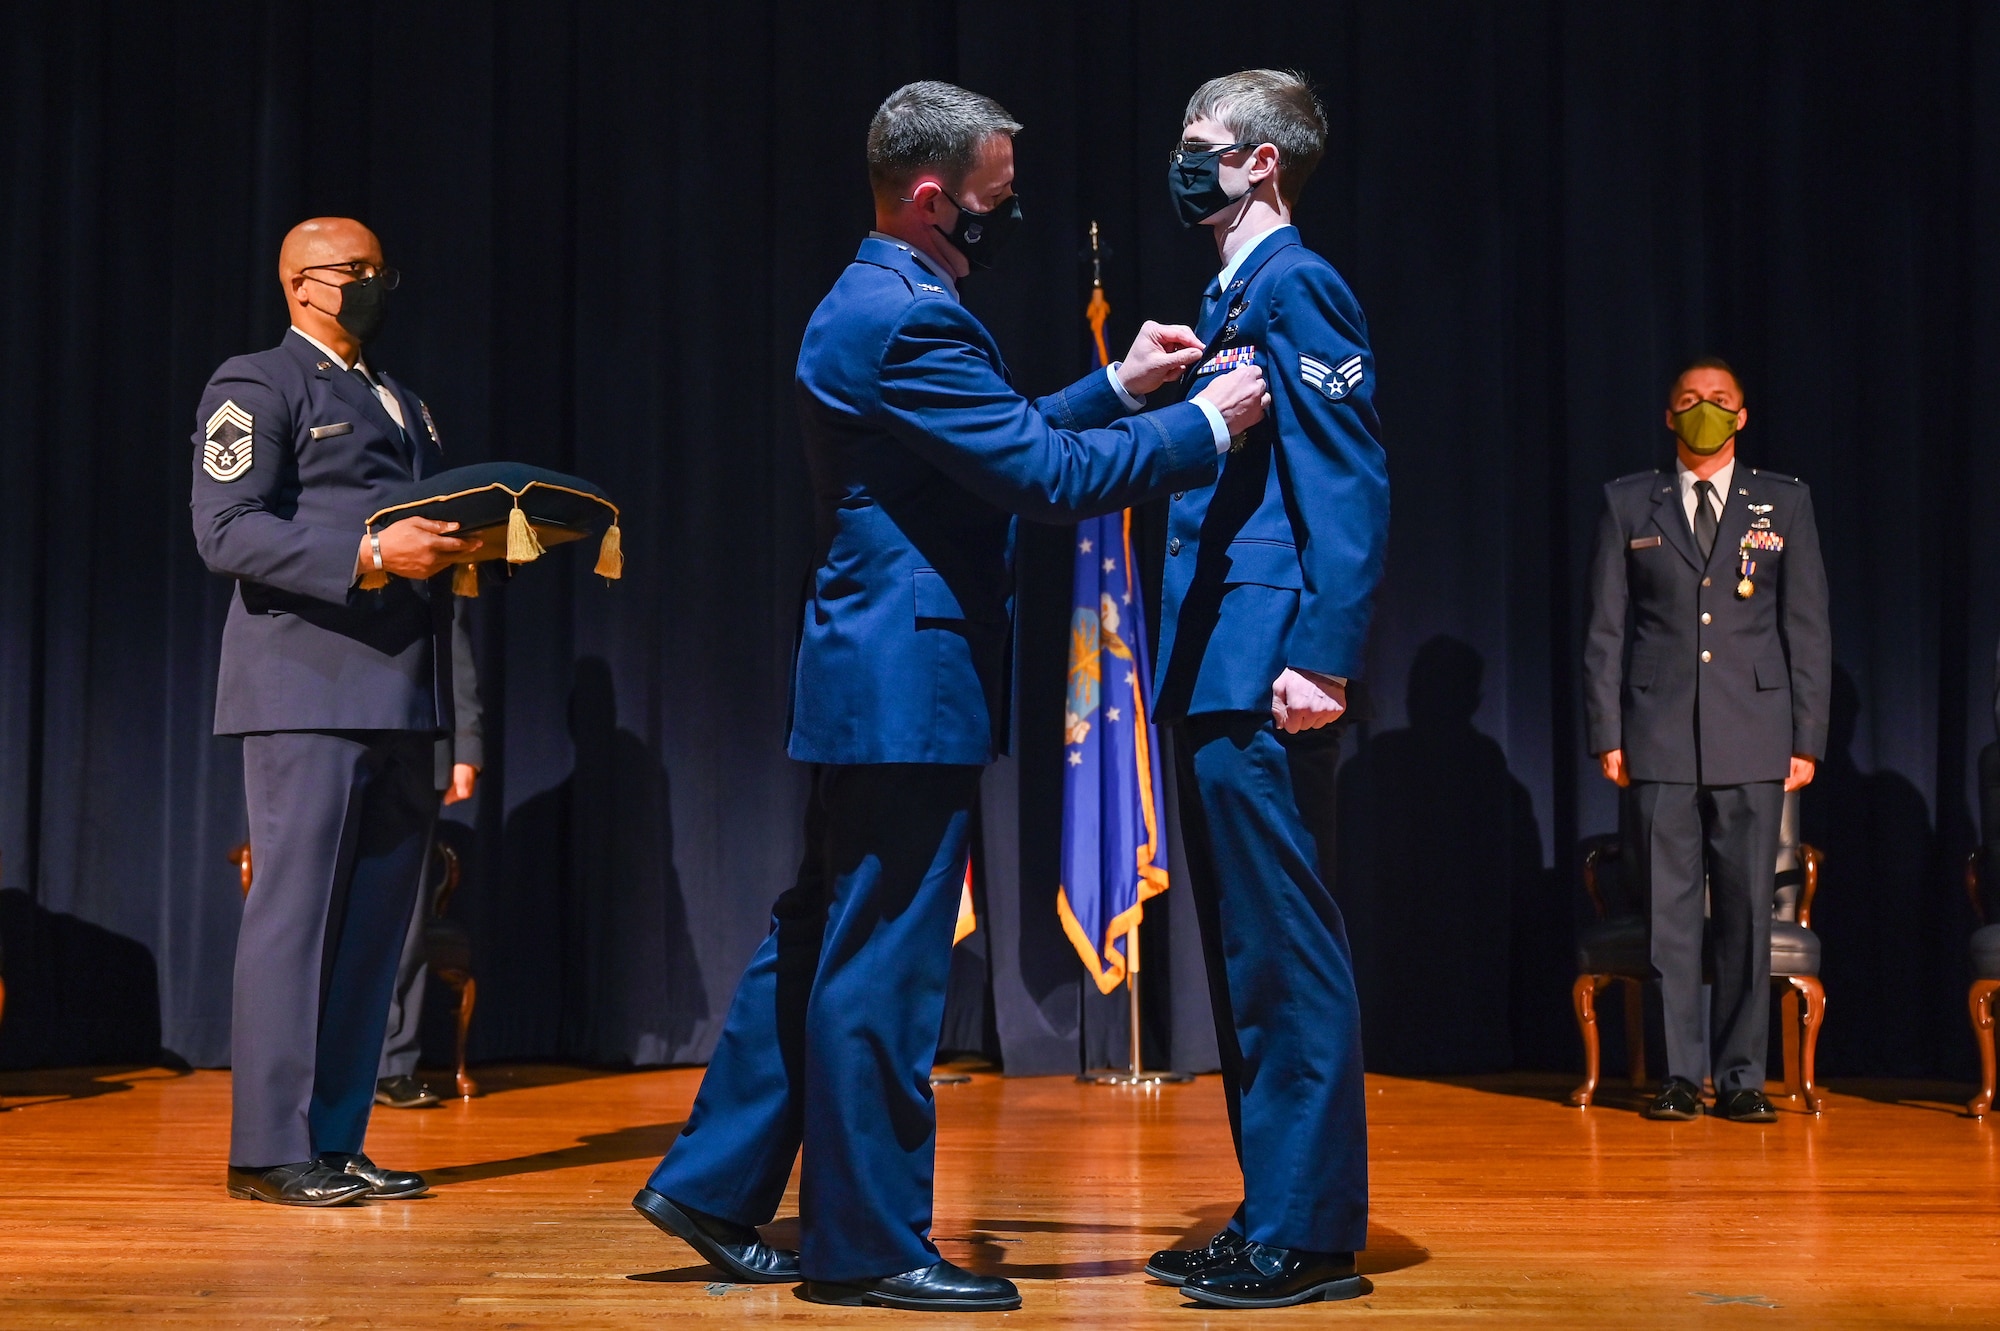 Airmen receiving an award